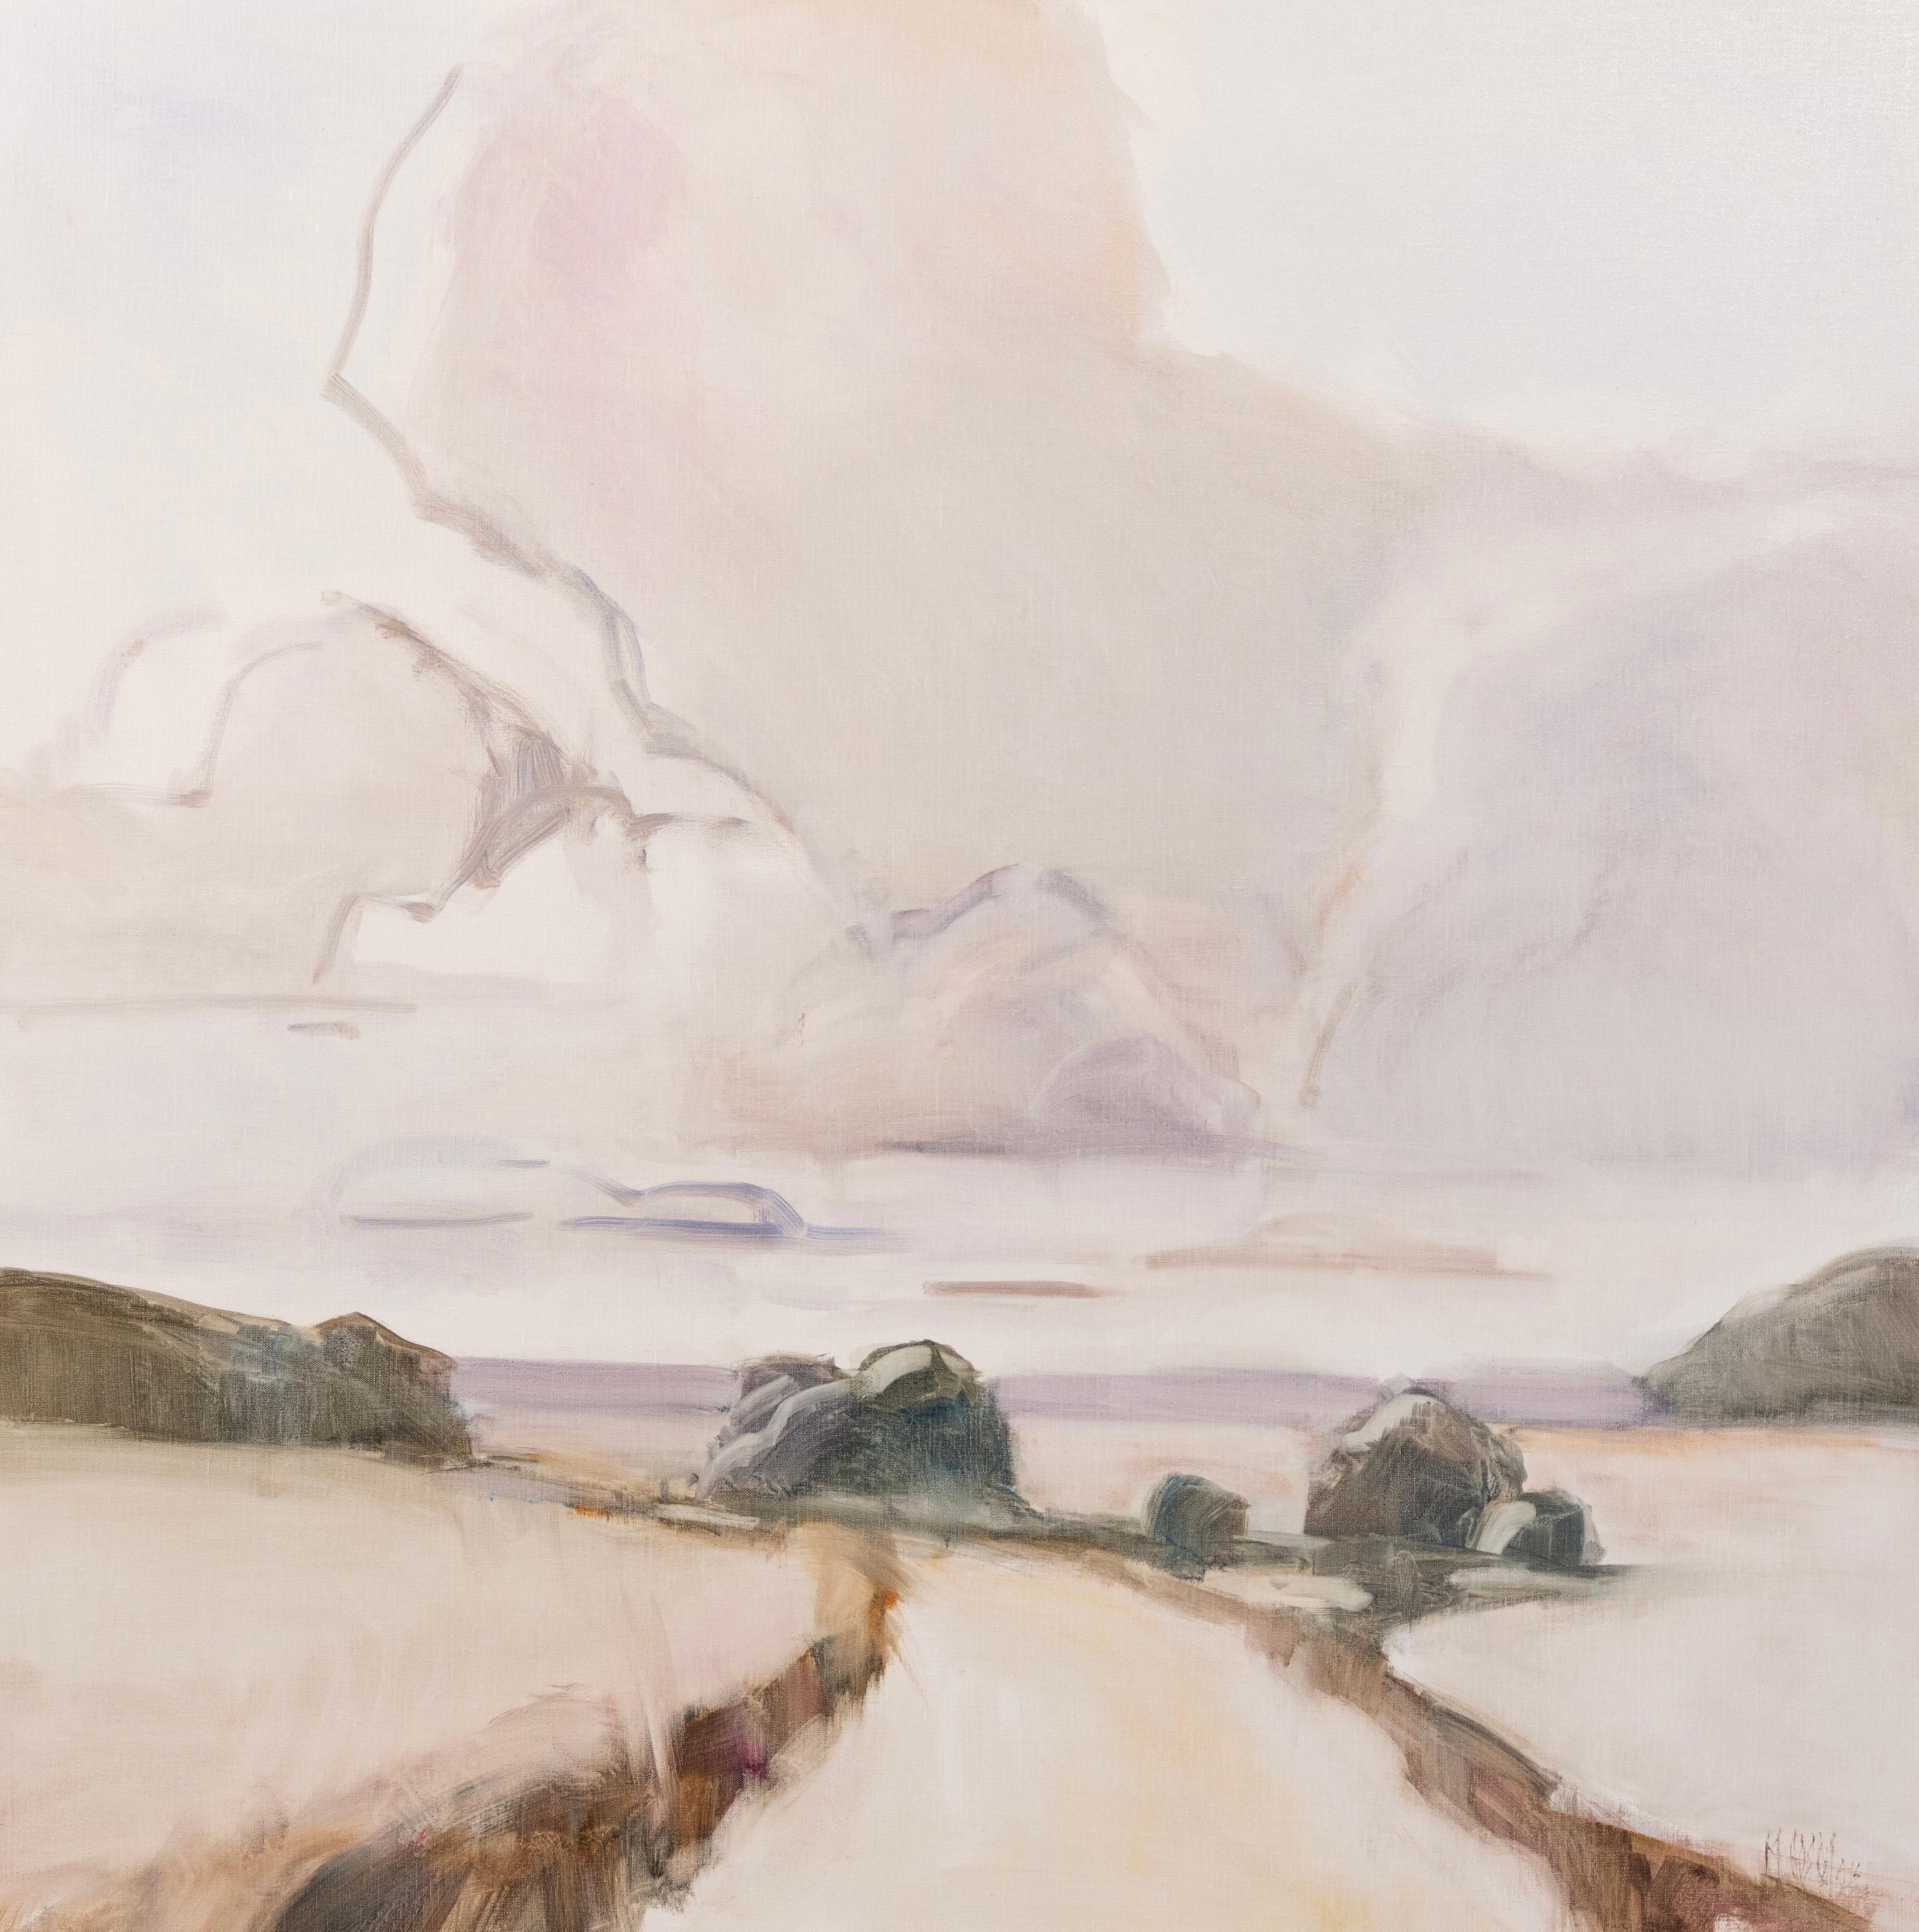 Millie Gosch ist eine begeisterte Pleinair-Malerin, die Studien aus dem wirklichen Leben malt und aus diesen Studien ihre wunderschönen Landschaftsbilder schafft. Als erfahrene Künstlerin arbeitet sie seit mehr als 25 Jahren als professionelle